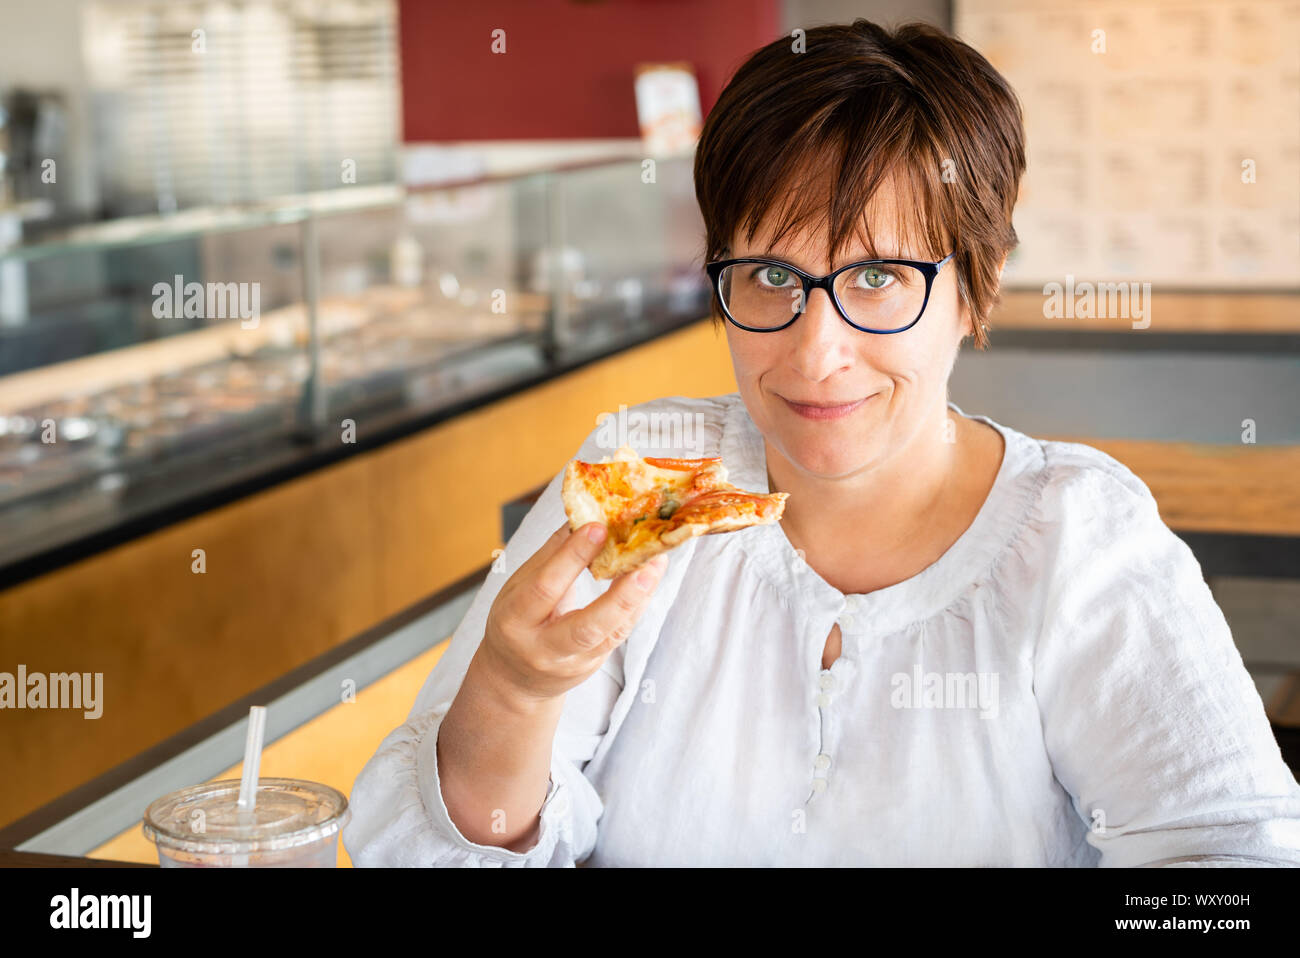 La donna caucasica con occhi verdi, capelli corti e occhiali di mangiare la pizza in un ristorante. Foto Stock